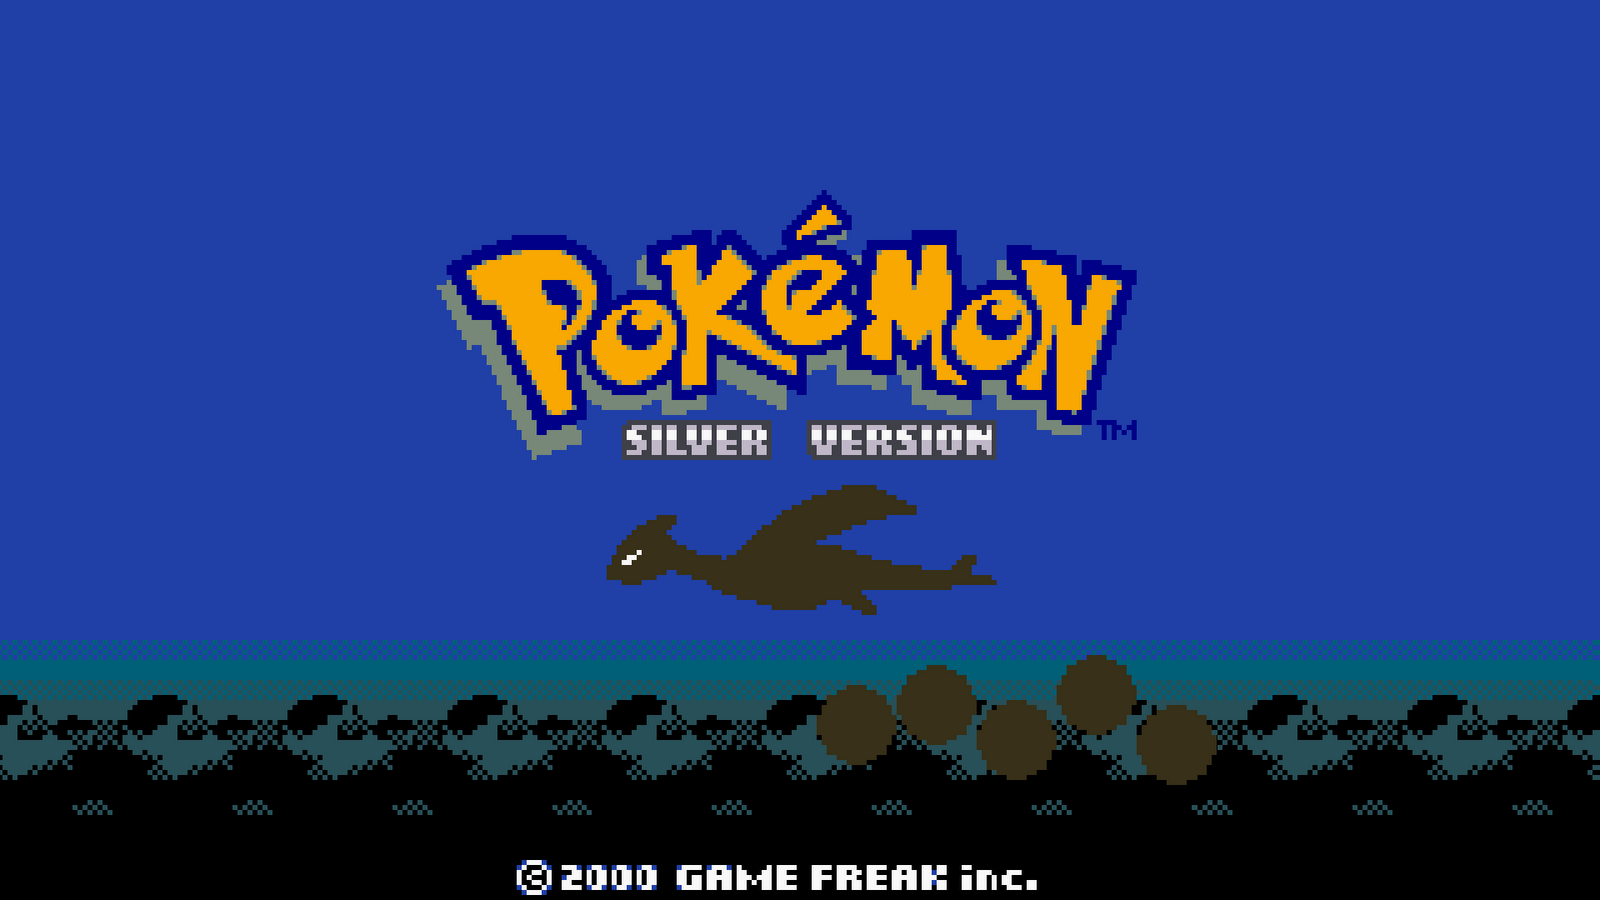 Hãy thưởng thức độc quyền hình nền Pokemon bản Silver, nét vẽ tinh tế và màu sắc hài hòa sẽ khiến bạn thích thú trước mỗi lần mở máy tính. Chắc chắn sẽ làm hài lòng bạn và các fan hâm mộ Pokemon.